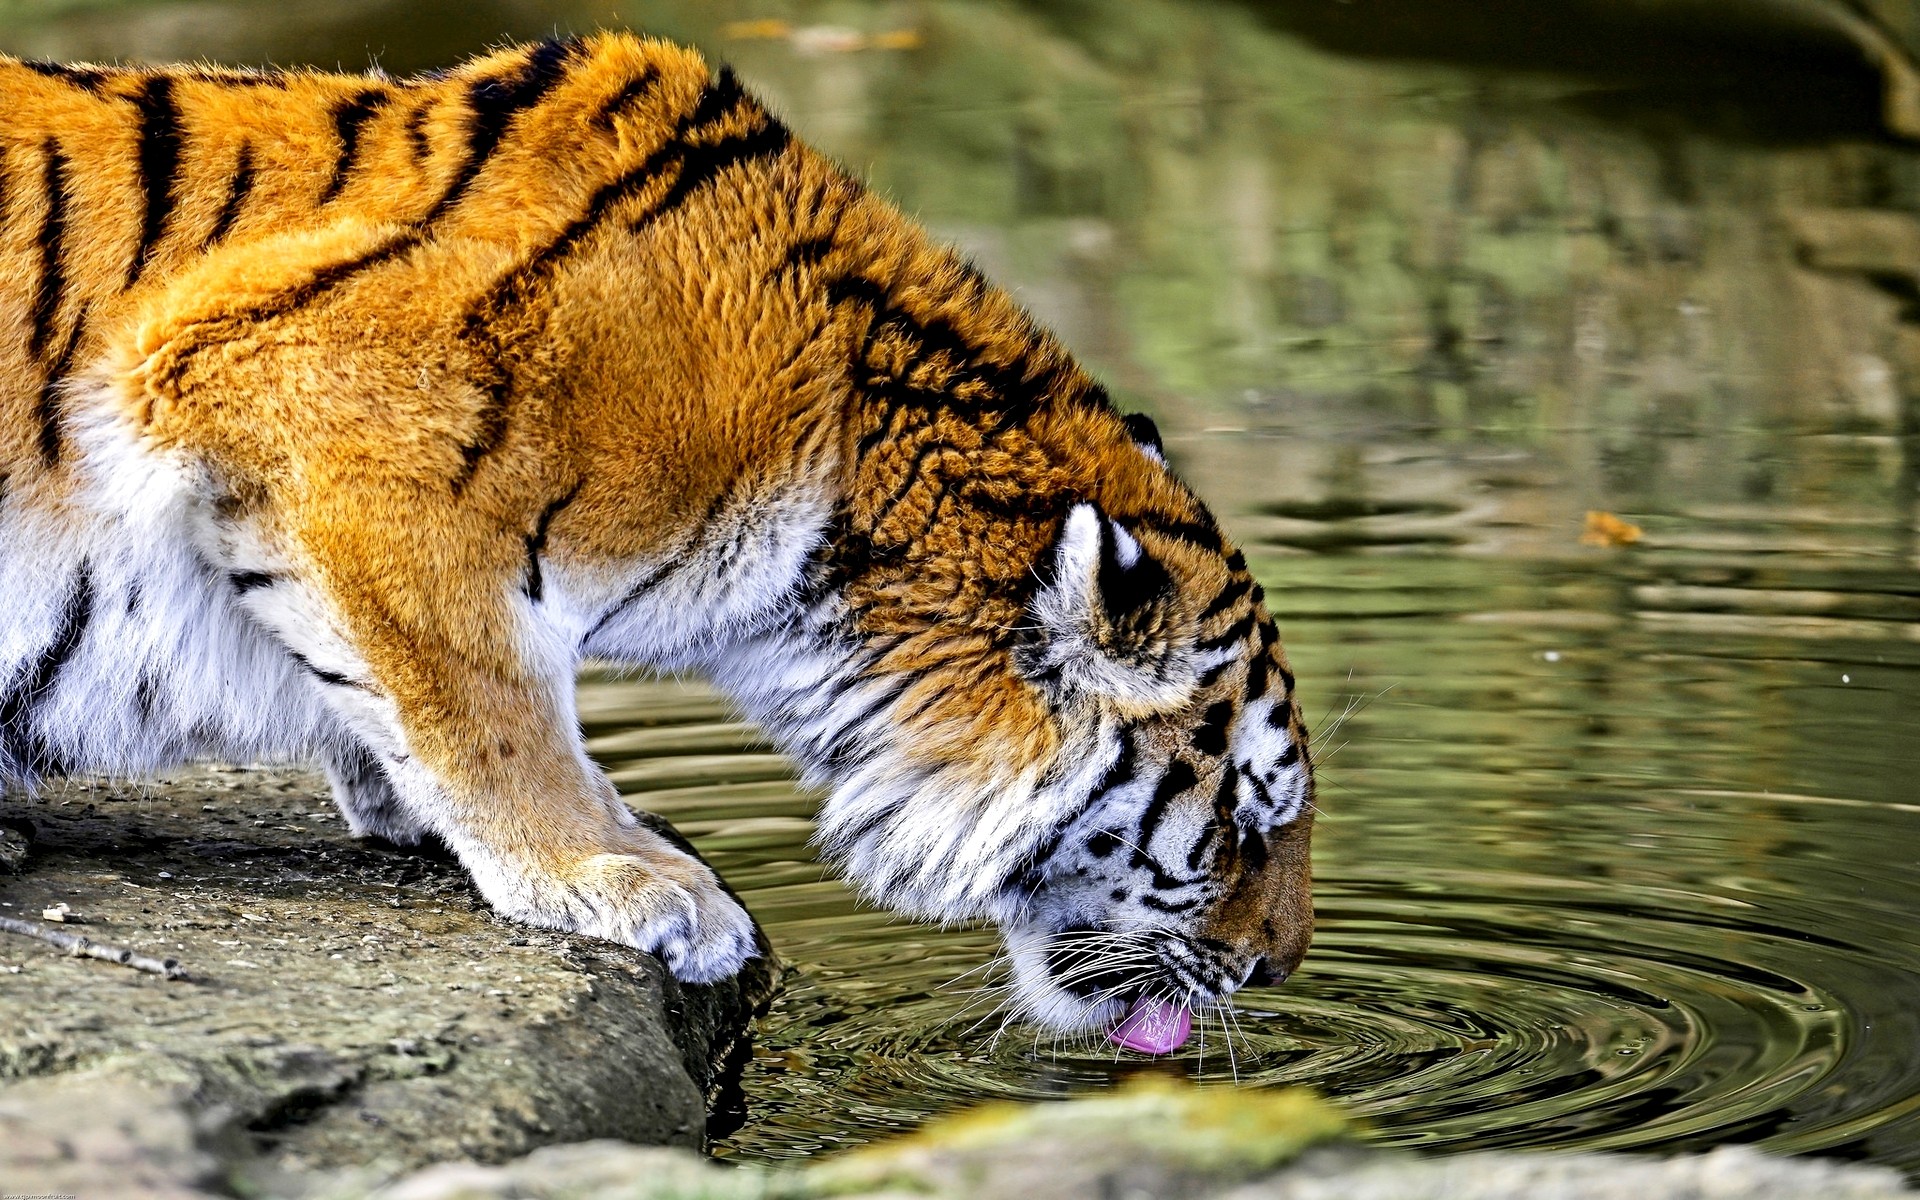 General 1920x1200 nature animals tiger water big cats HDR mammals closeup